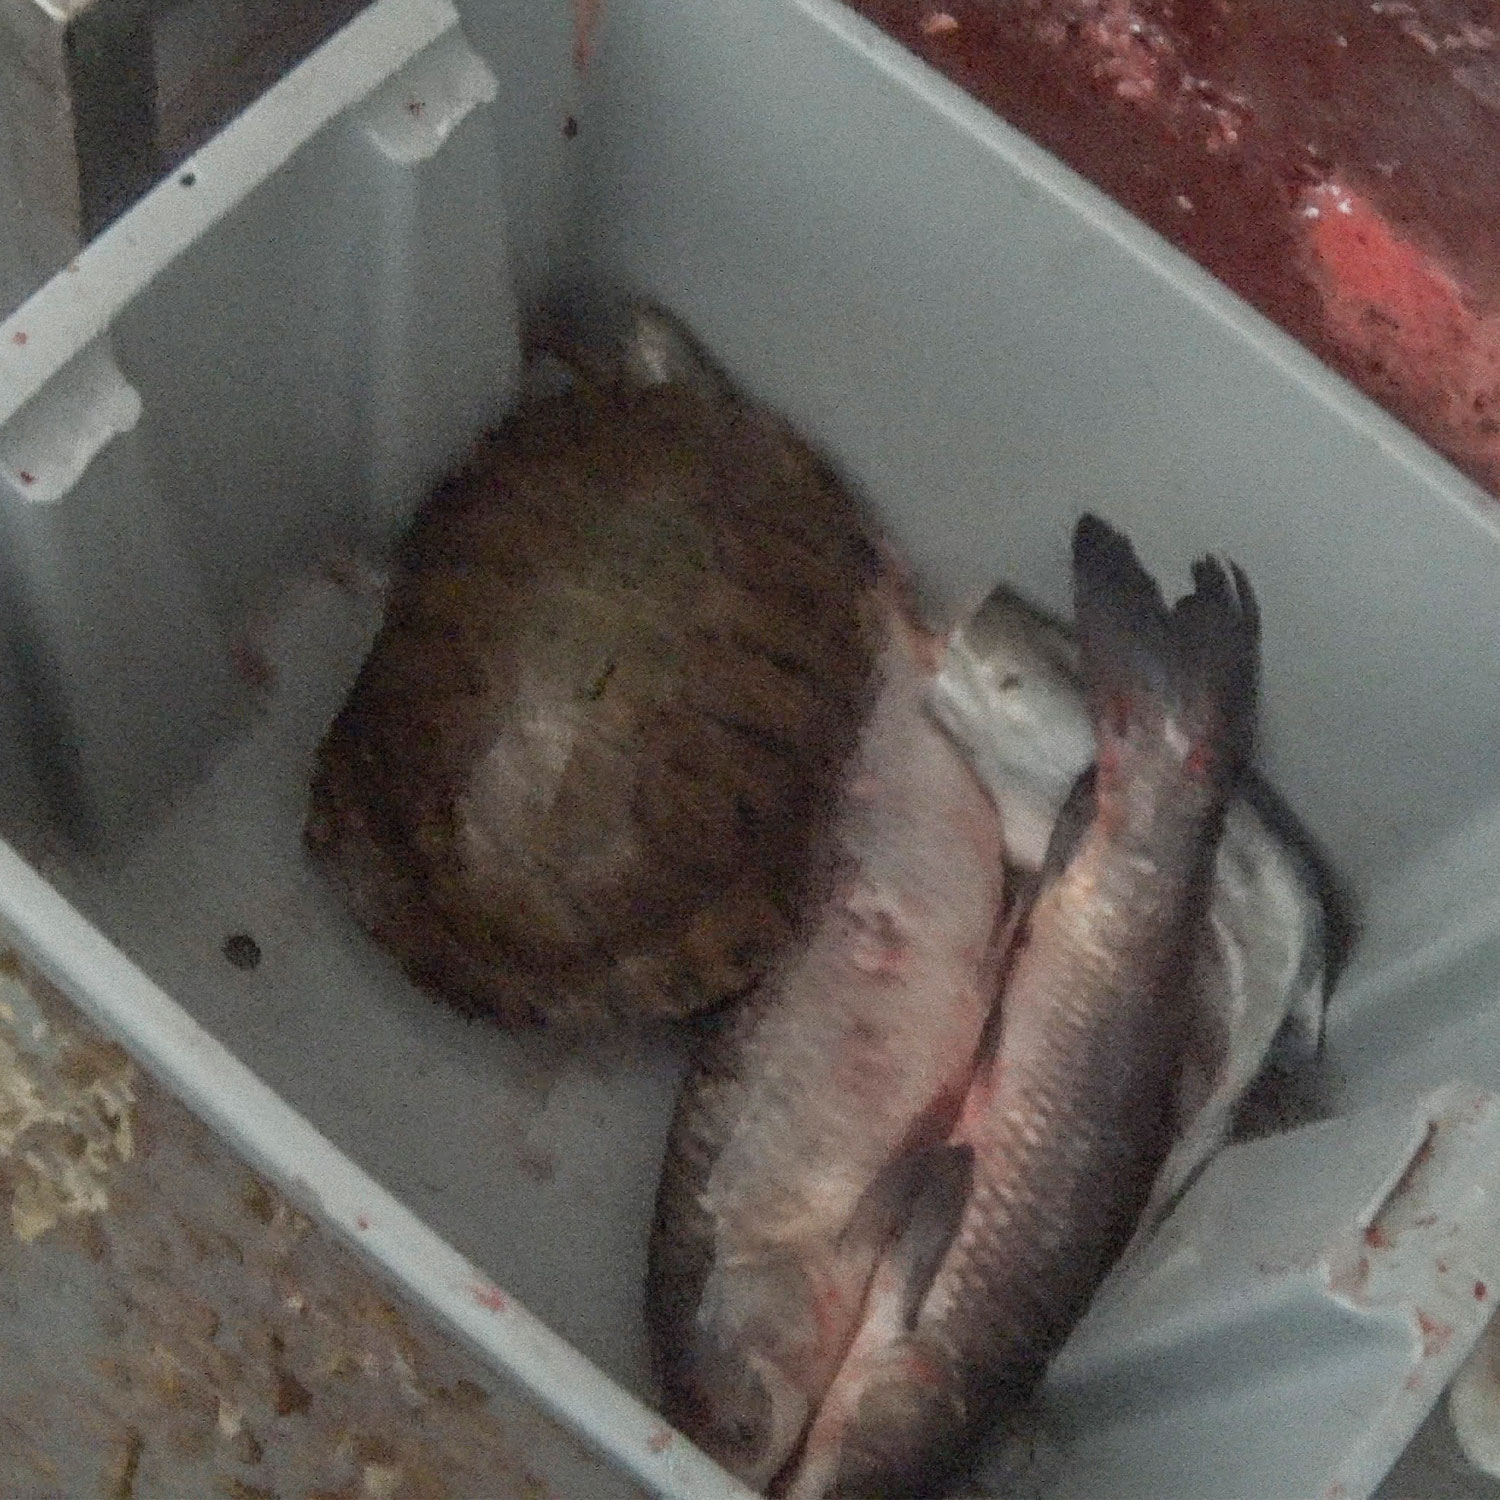 turtle in plastic bin